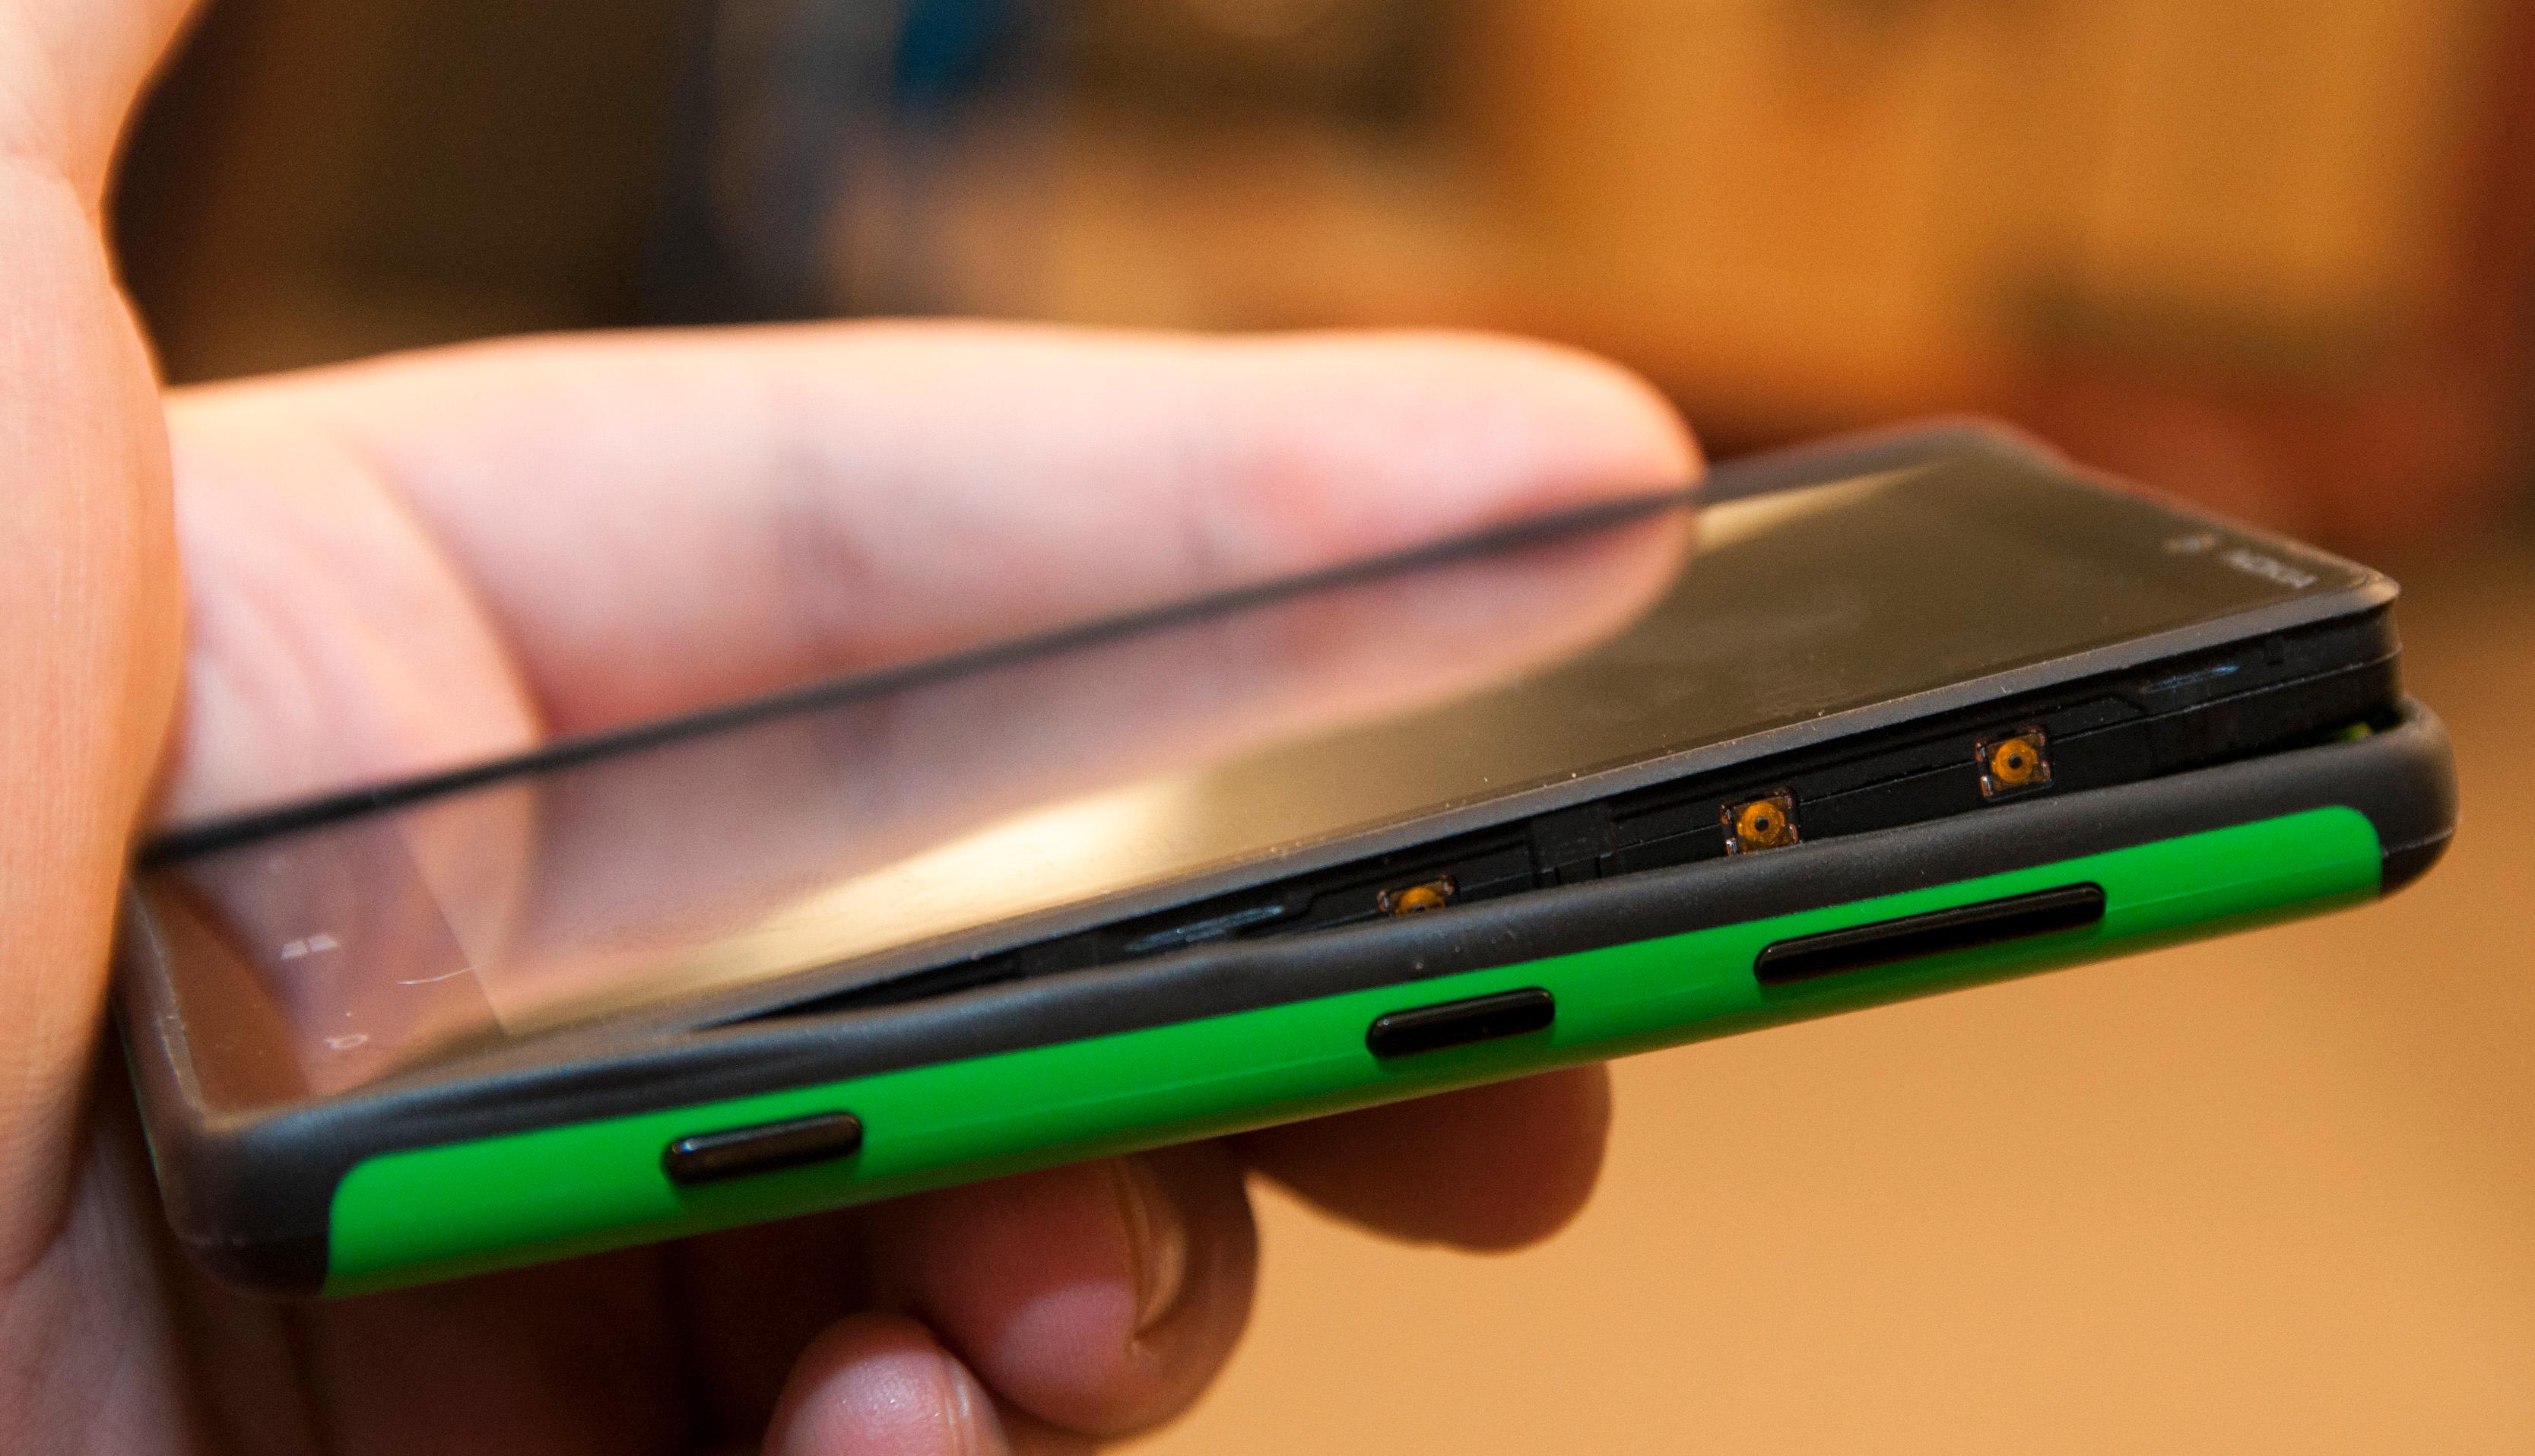 Hvis du vil kan du kjøpe andre deksler til telefonen. Dette skal gjøre Lumia 820 mer robust.Foto: Finn Jarle Kvalheim, Amobil.no